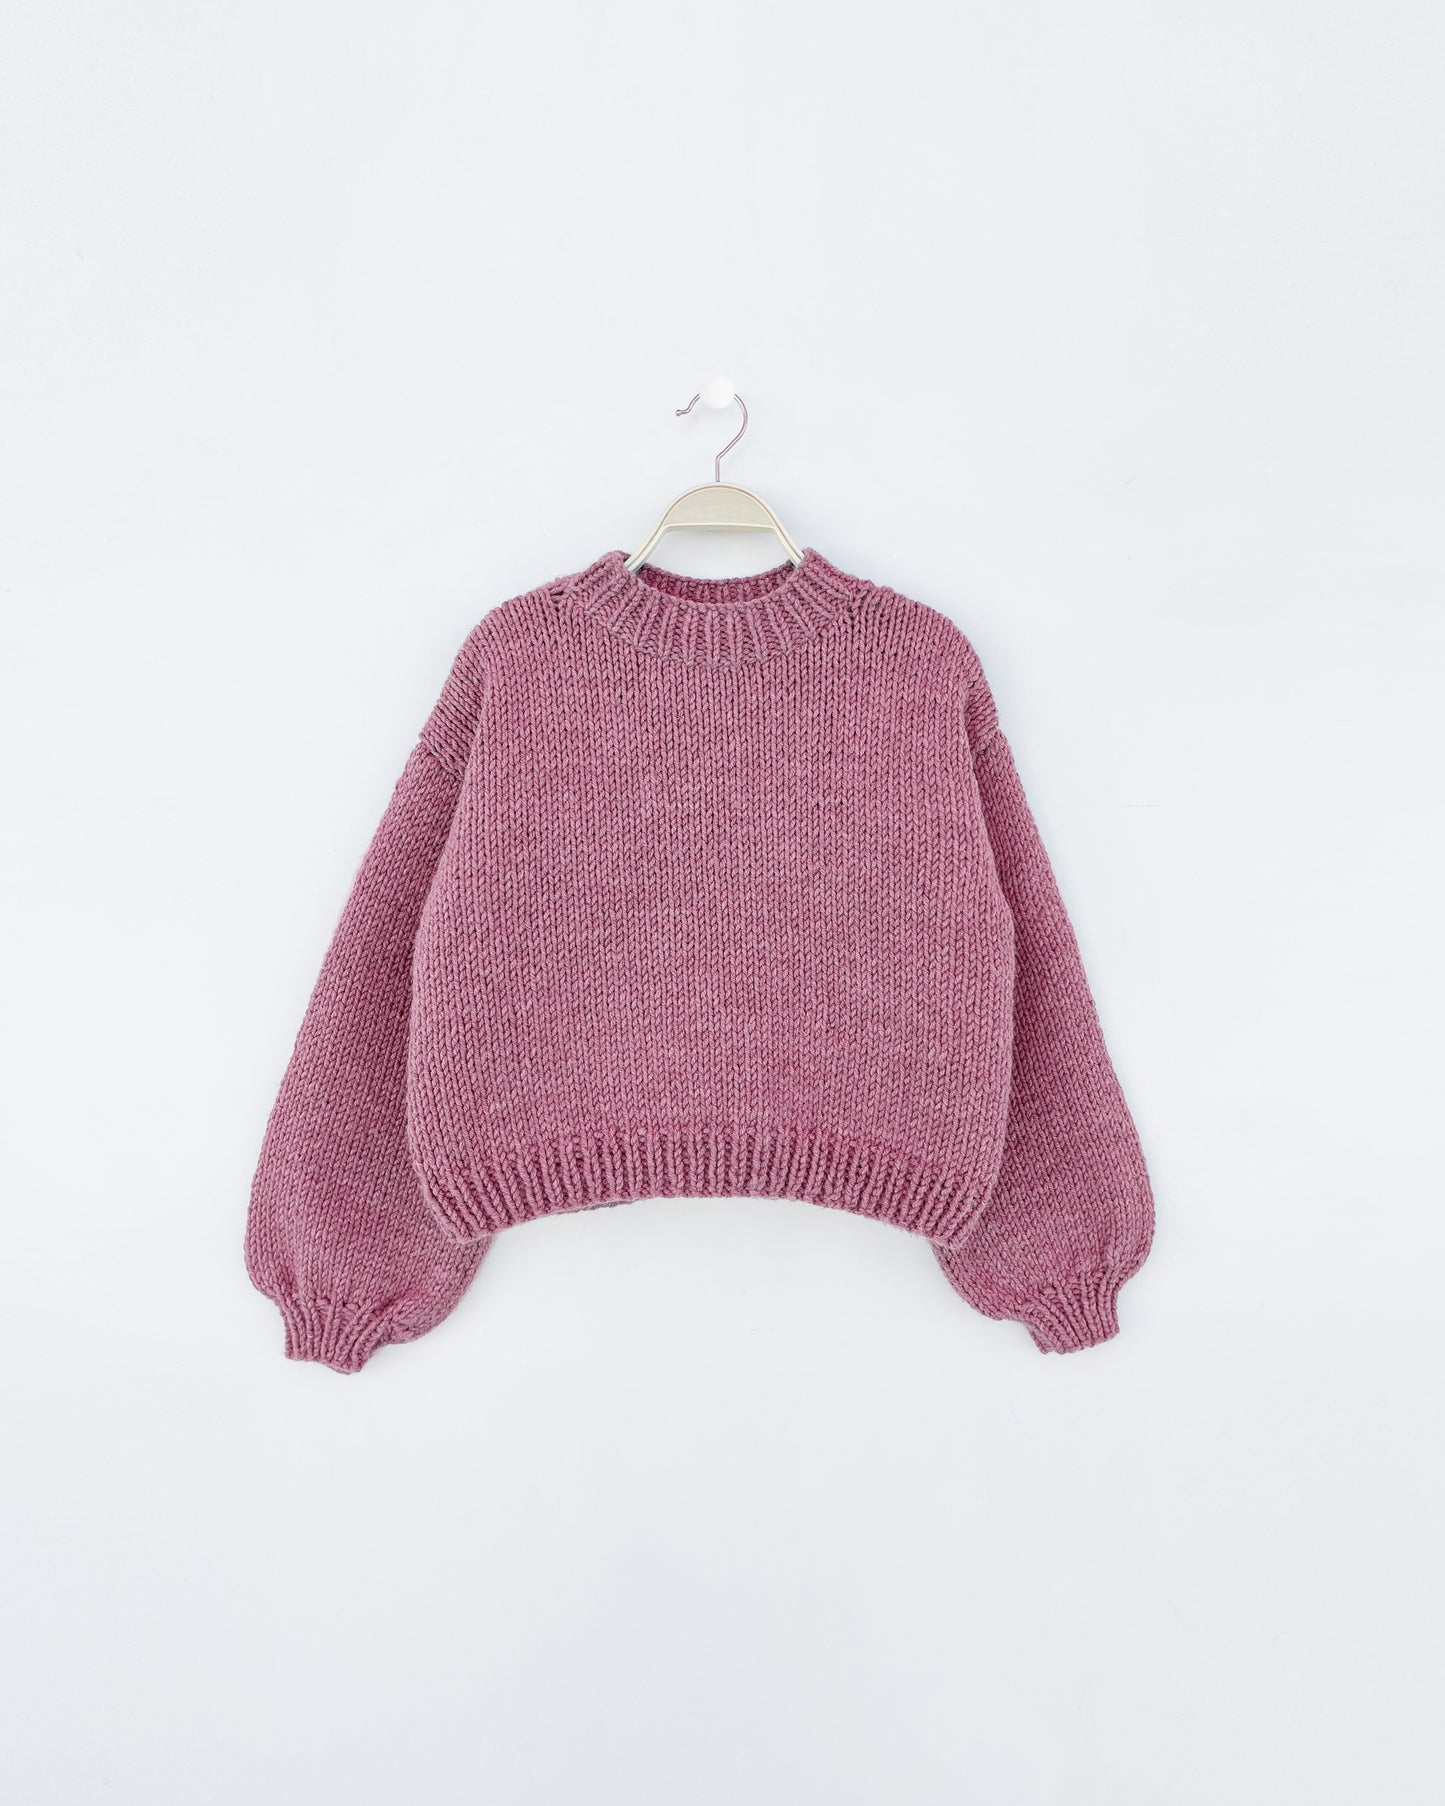 Kids' Sweater No.4 | Knitting chunky sweater pattern